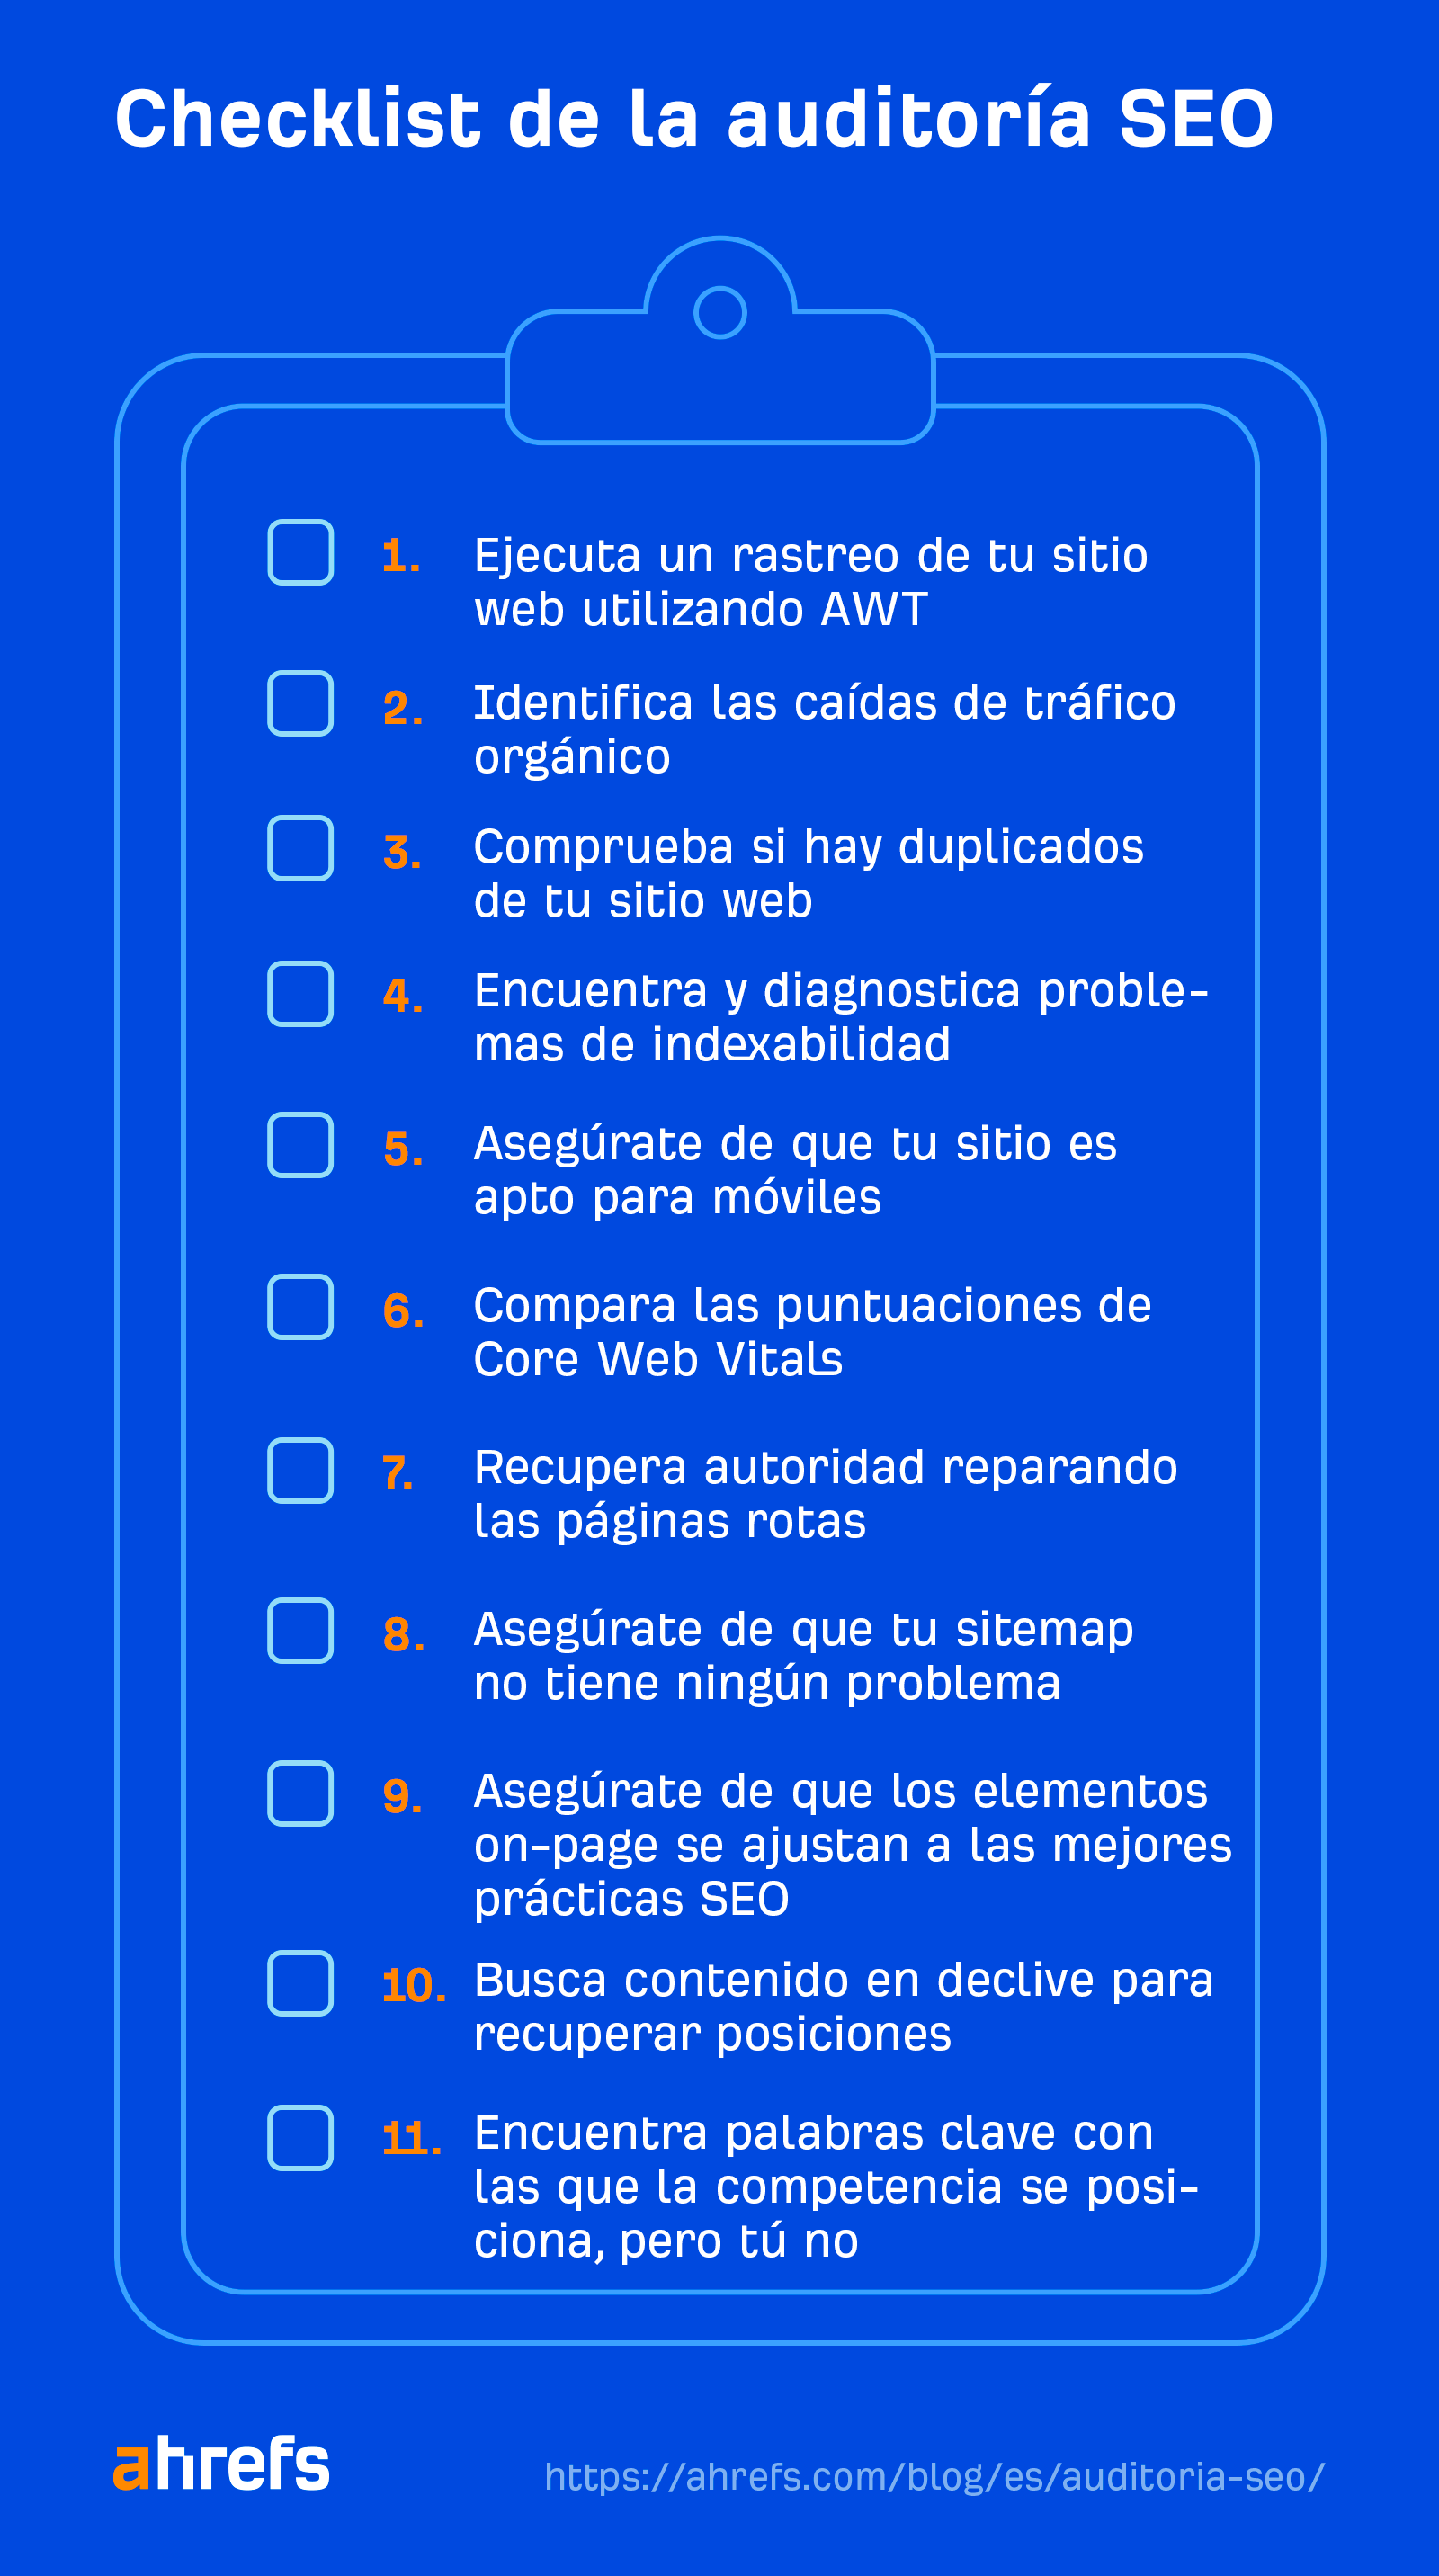 Checklist de la auditoría SEO de Ahrefs.